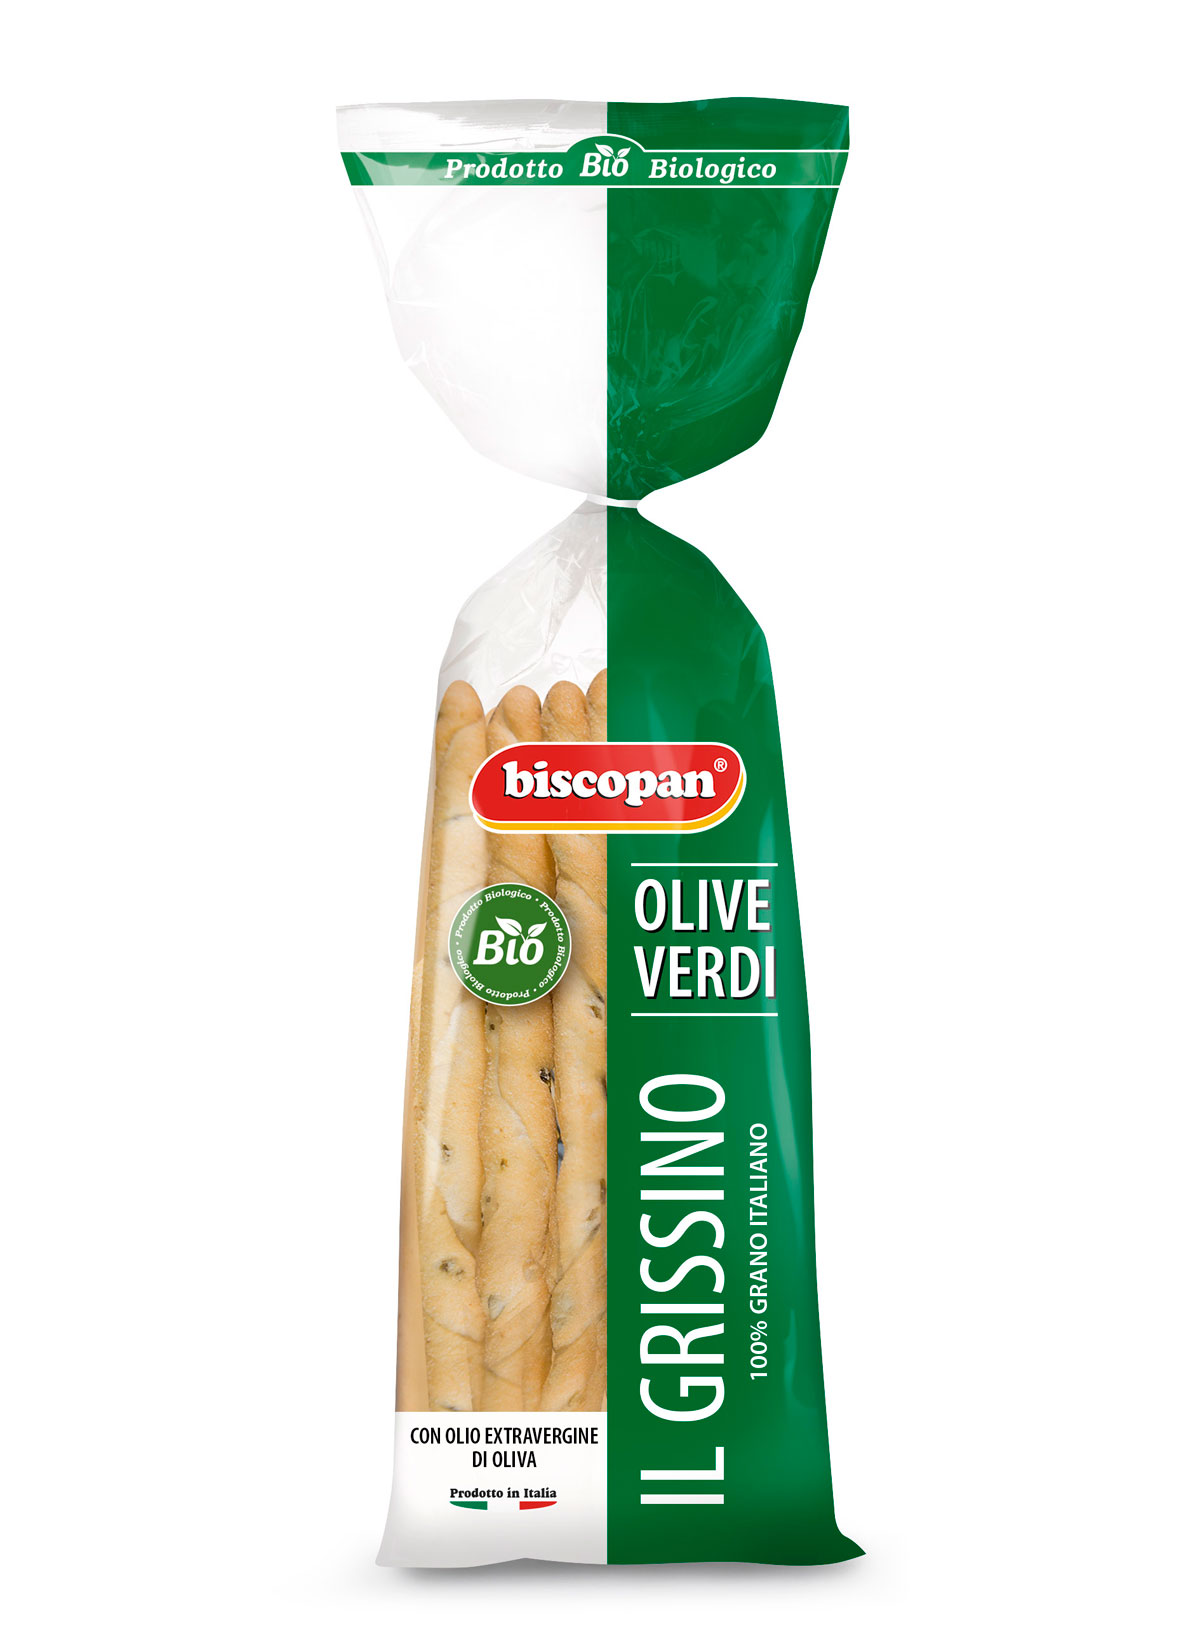 Green olive breadsticks